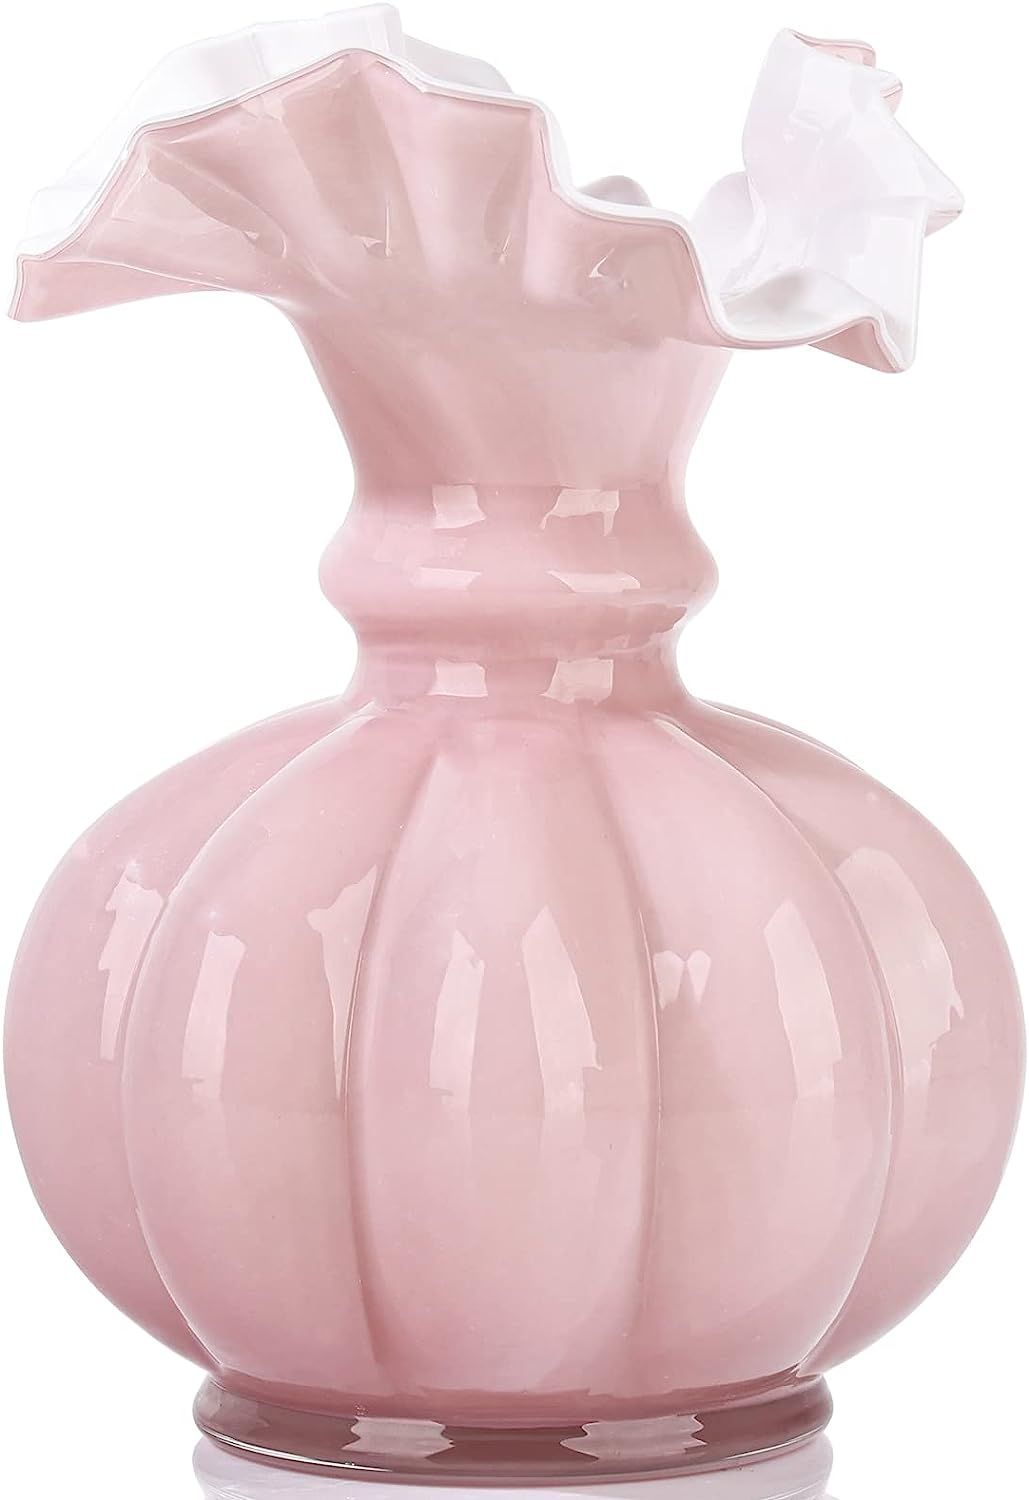 Hand Blown Glass Vase Decor,Pink Vase Hand Vase,Glass Flower Vase Round Collection Modern Art Des... | Amazon (US)